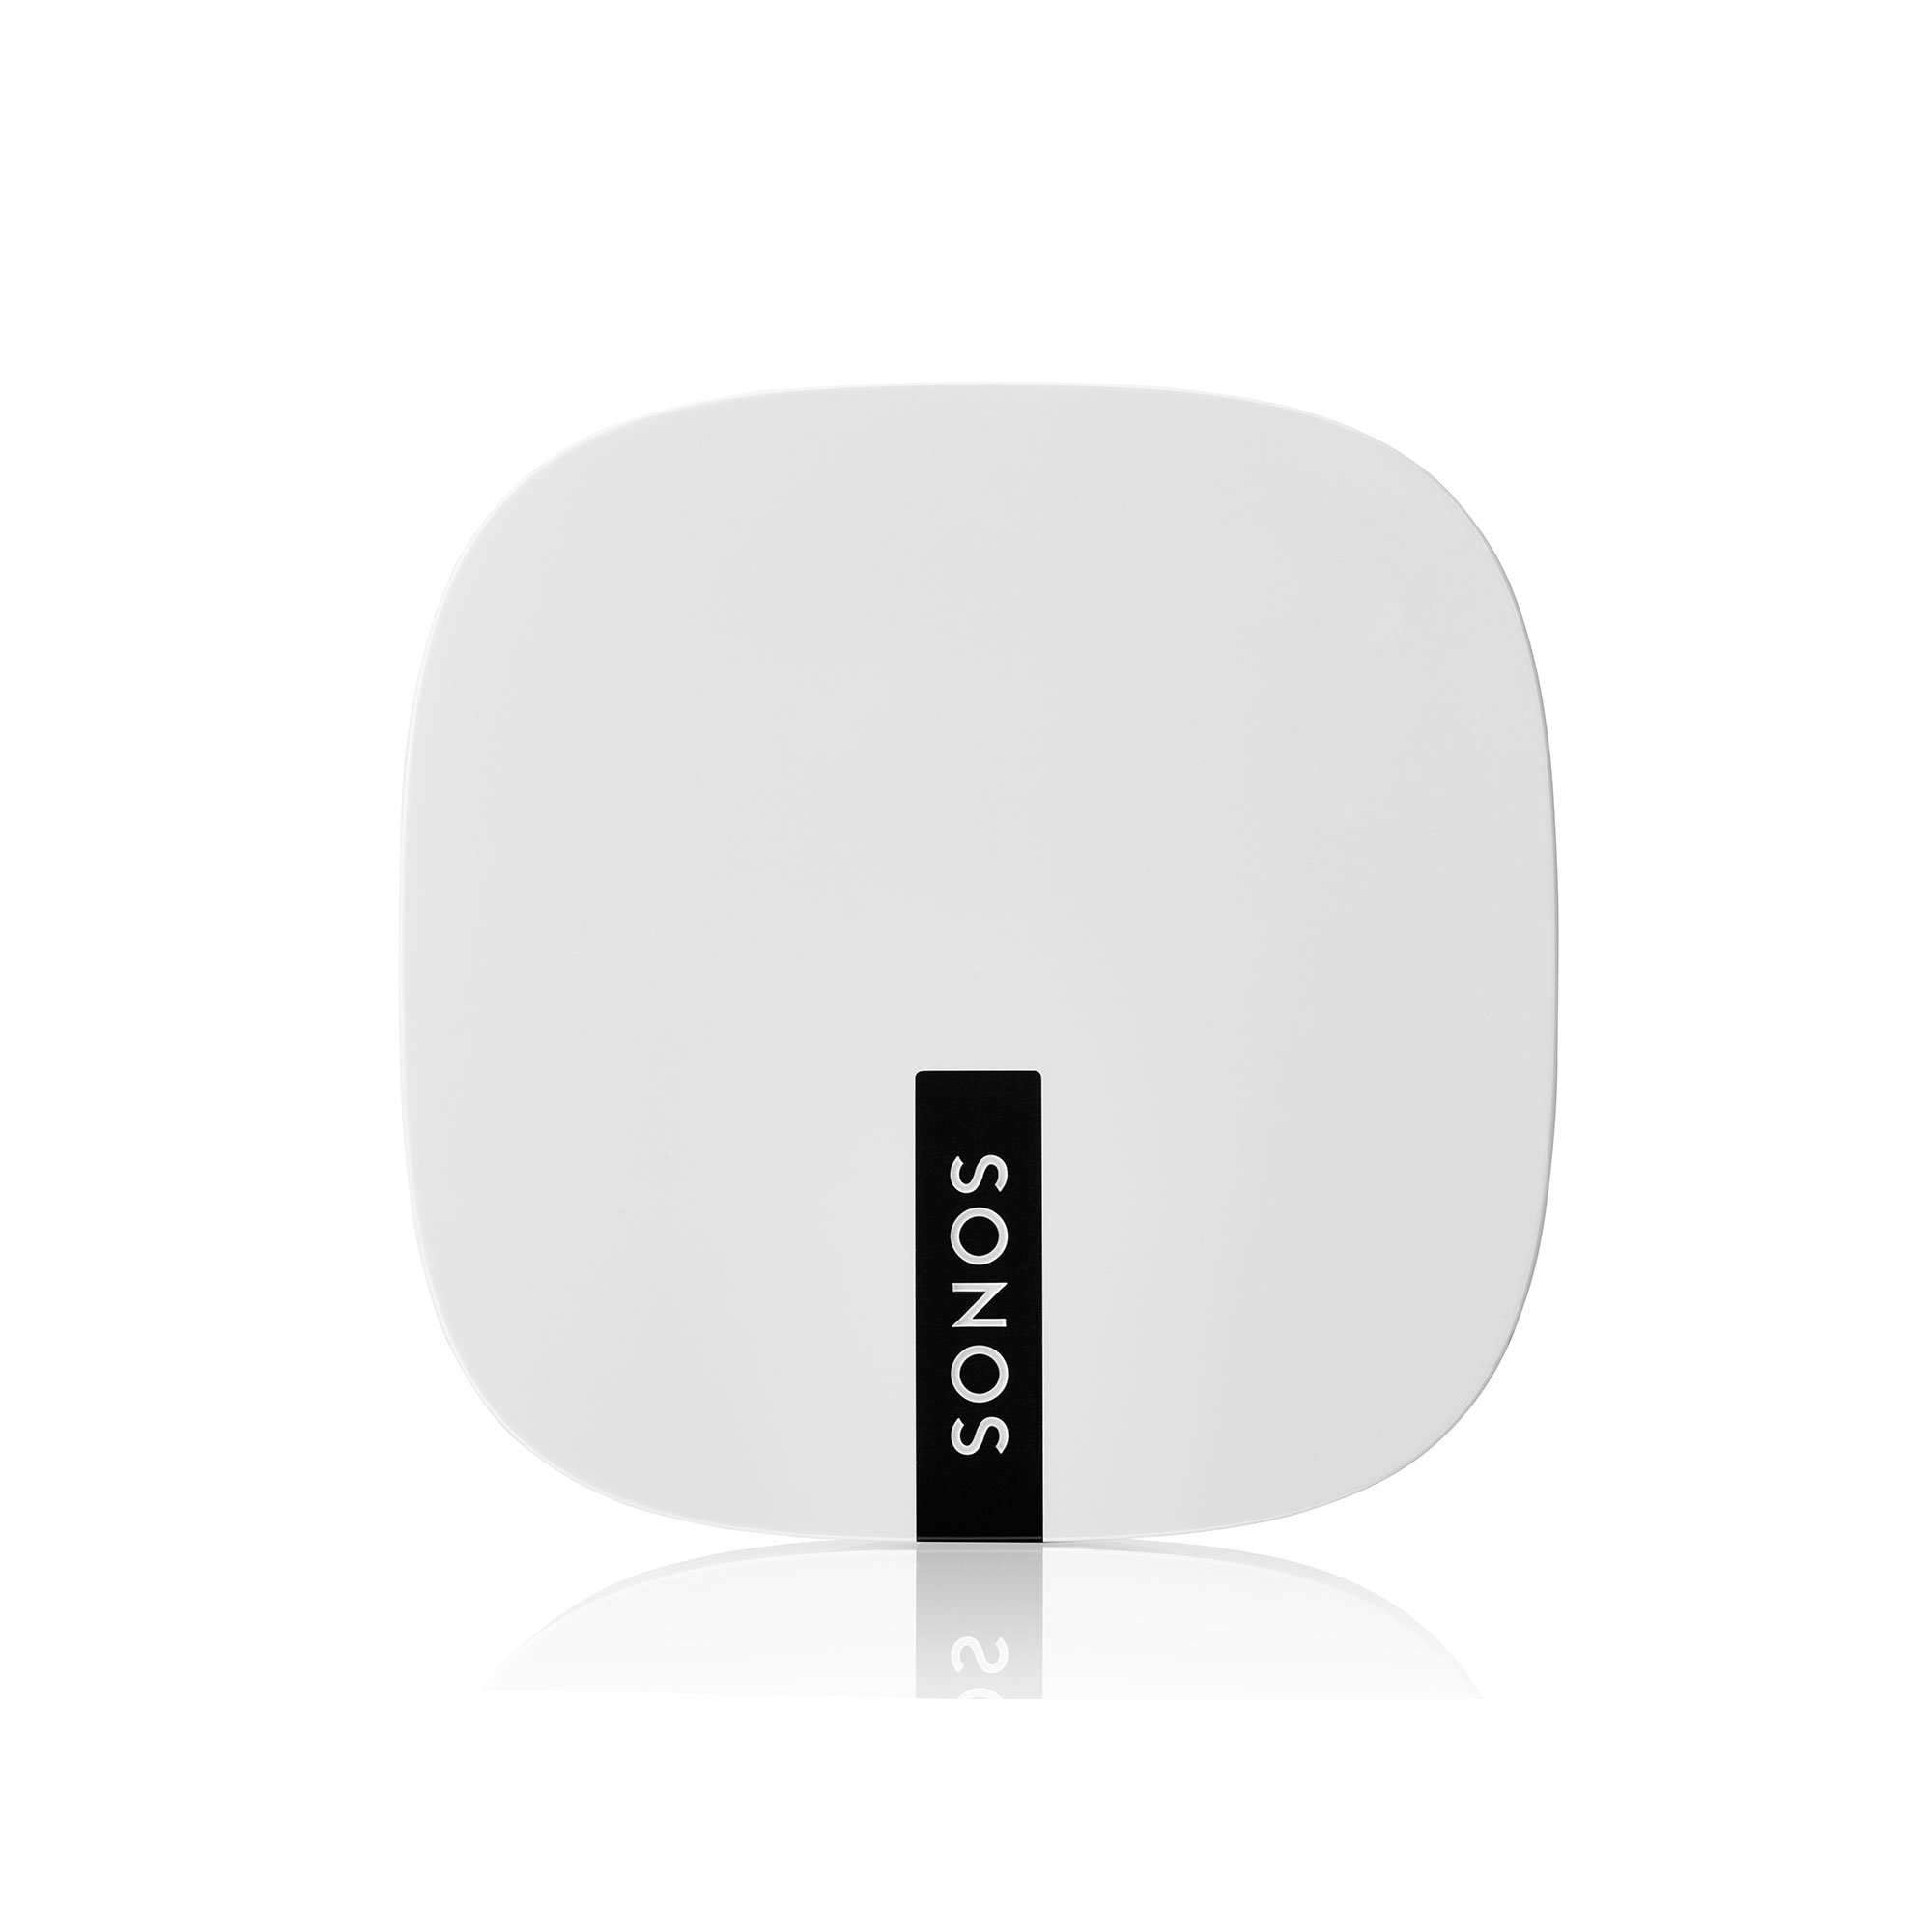 Sonos - Boost - Wireless Extender Australia